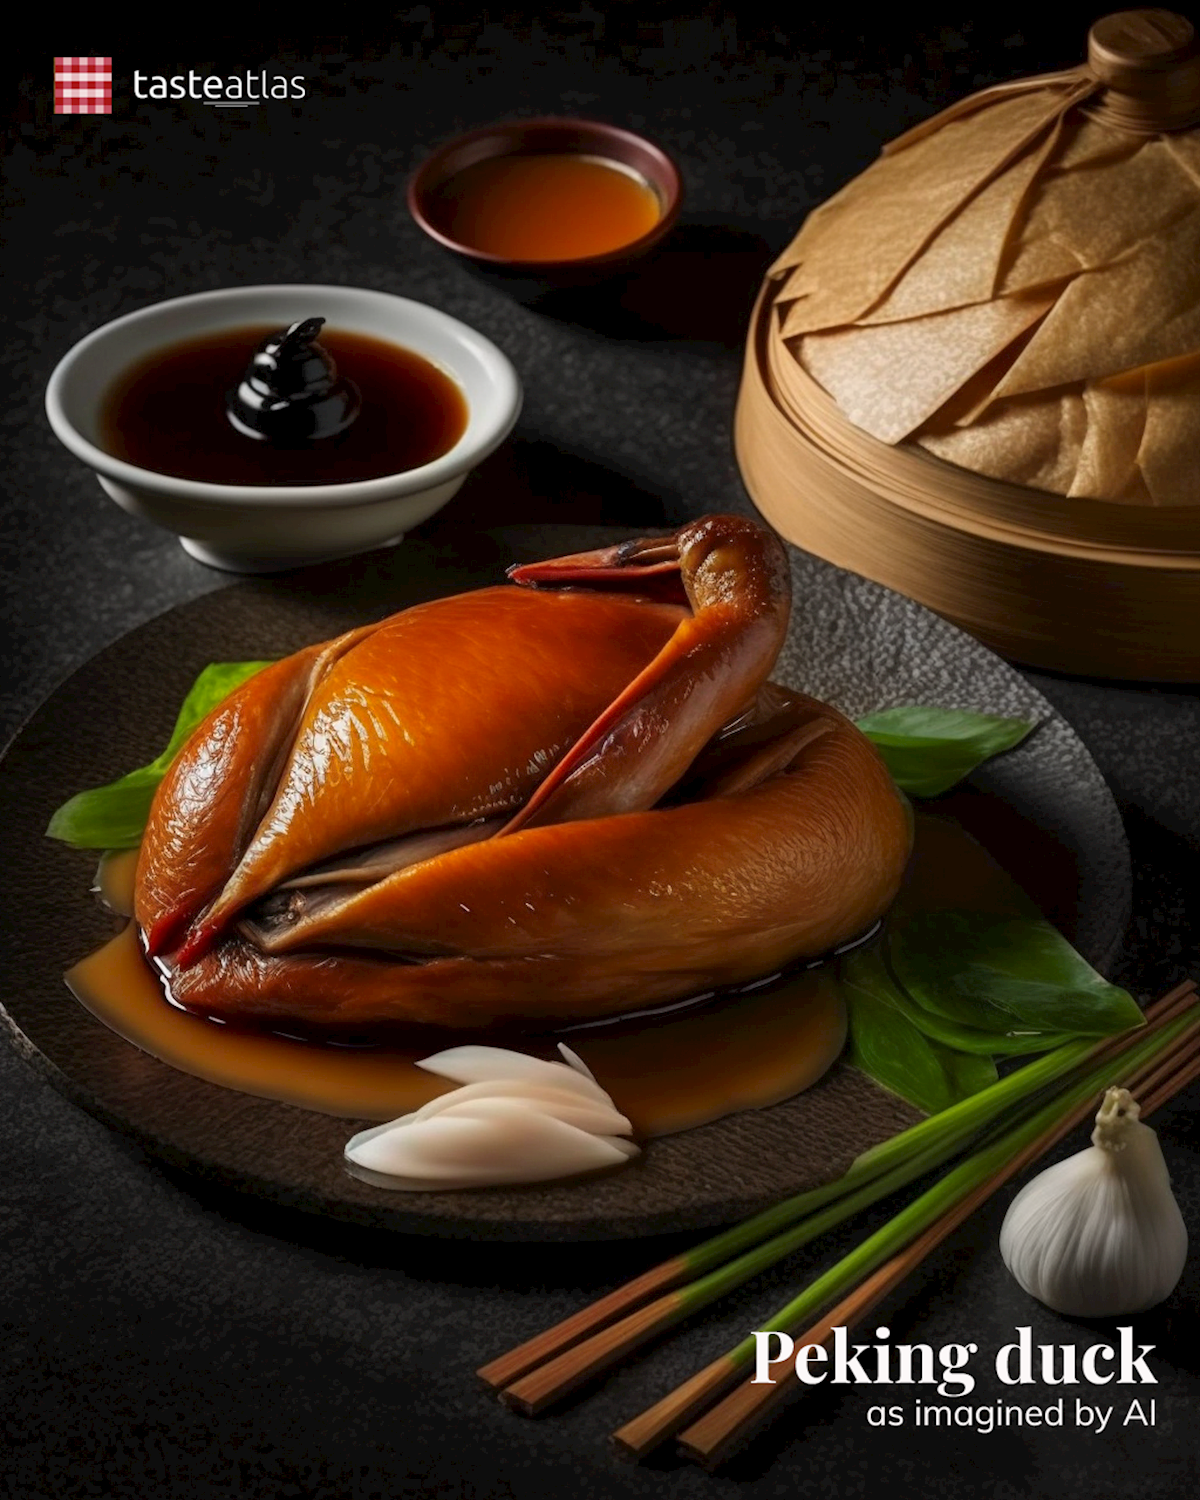 Prompt: Imagine authentic Peking duck